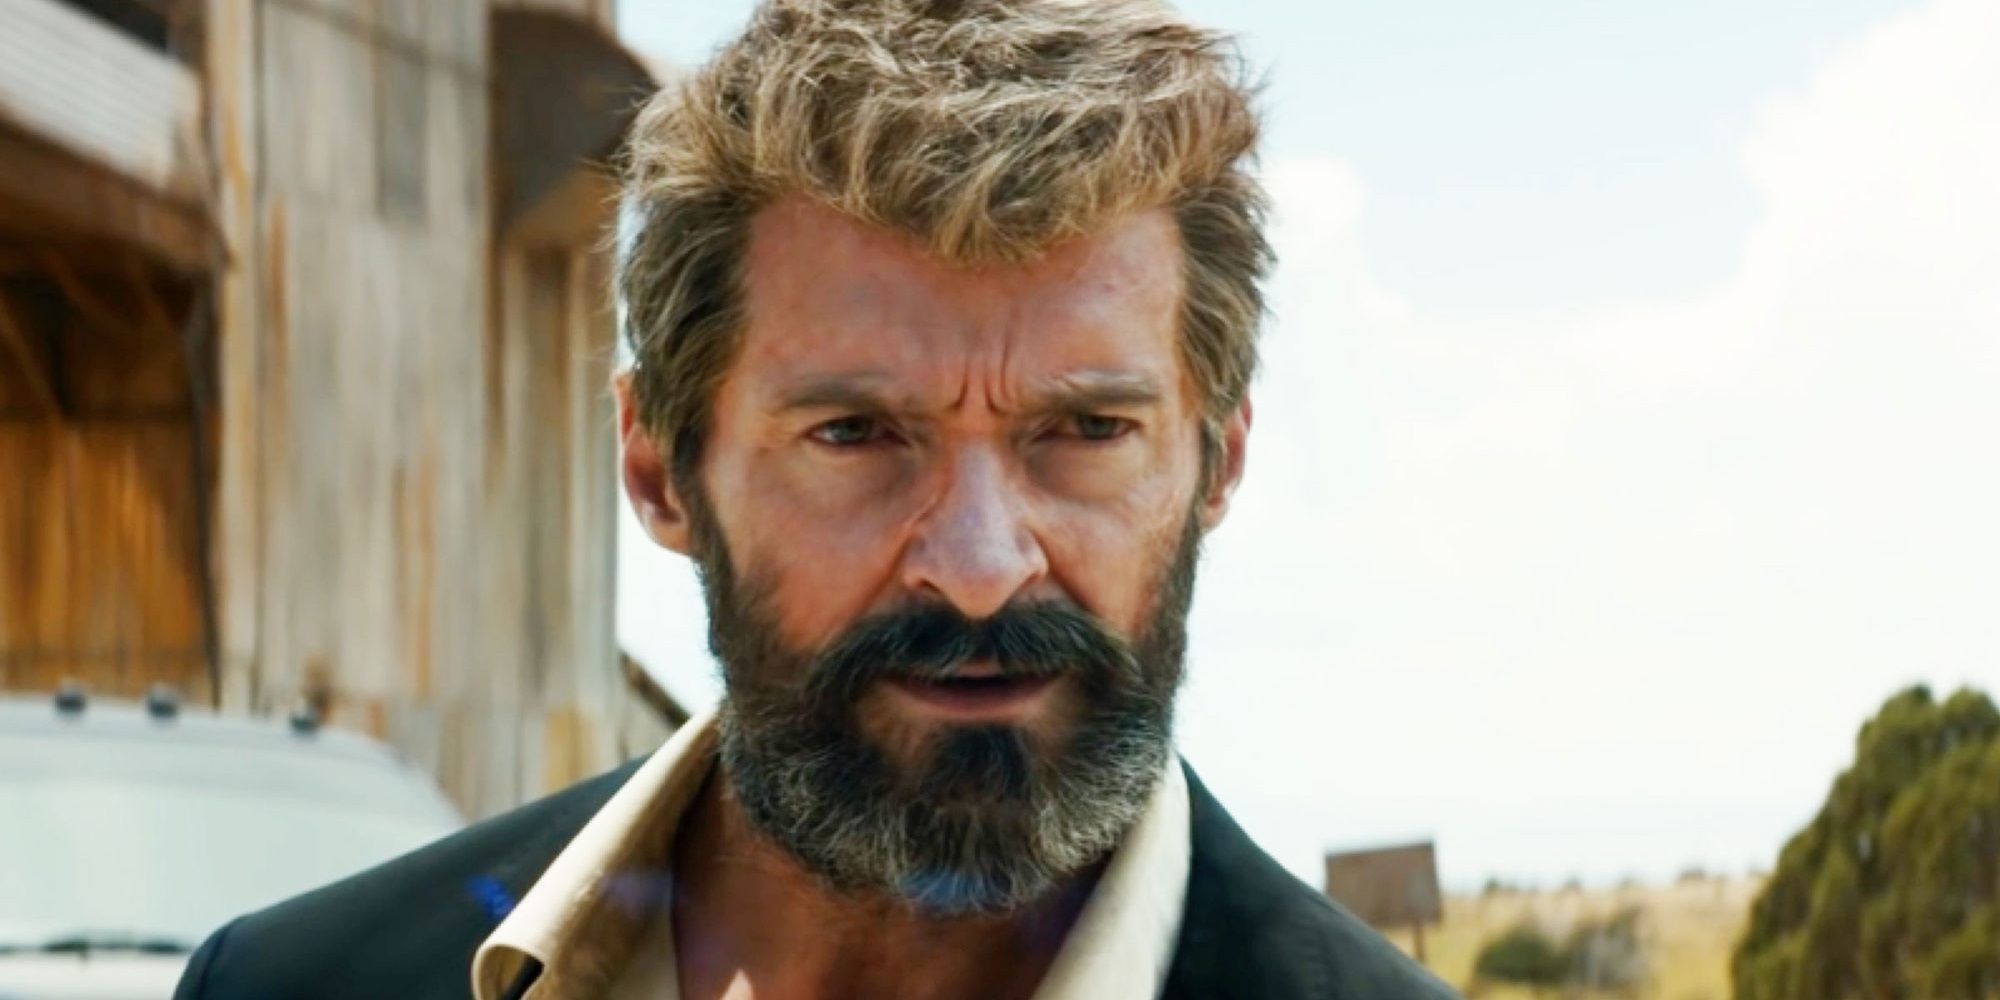 Wolverine walks through the desert in Logan